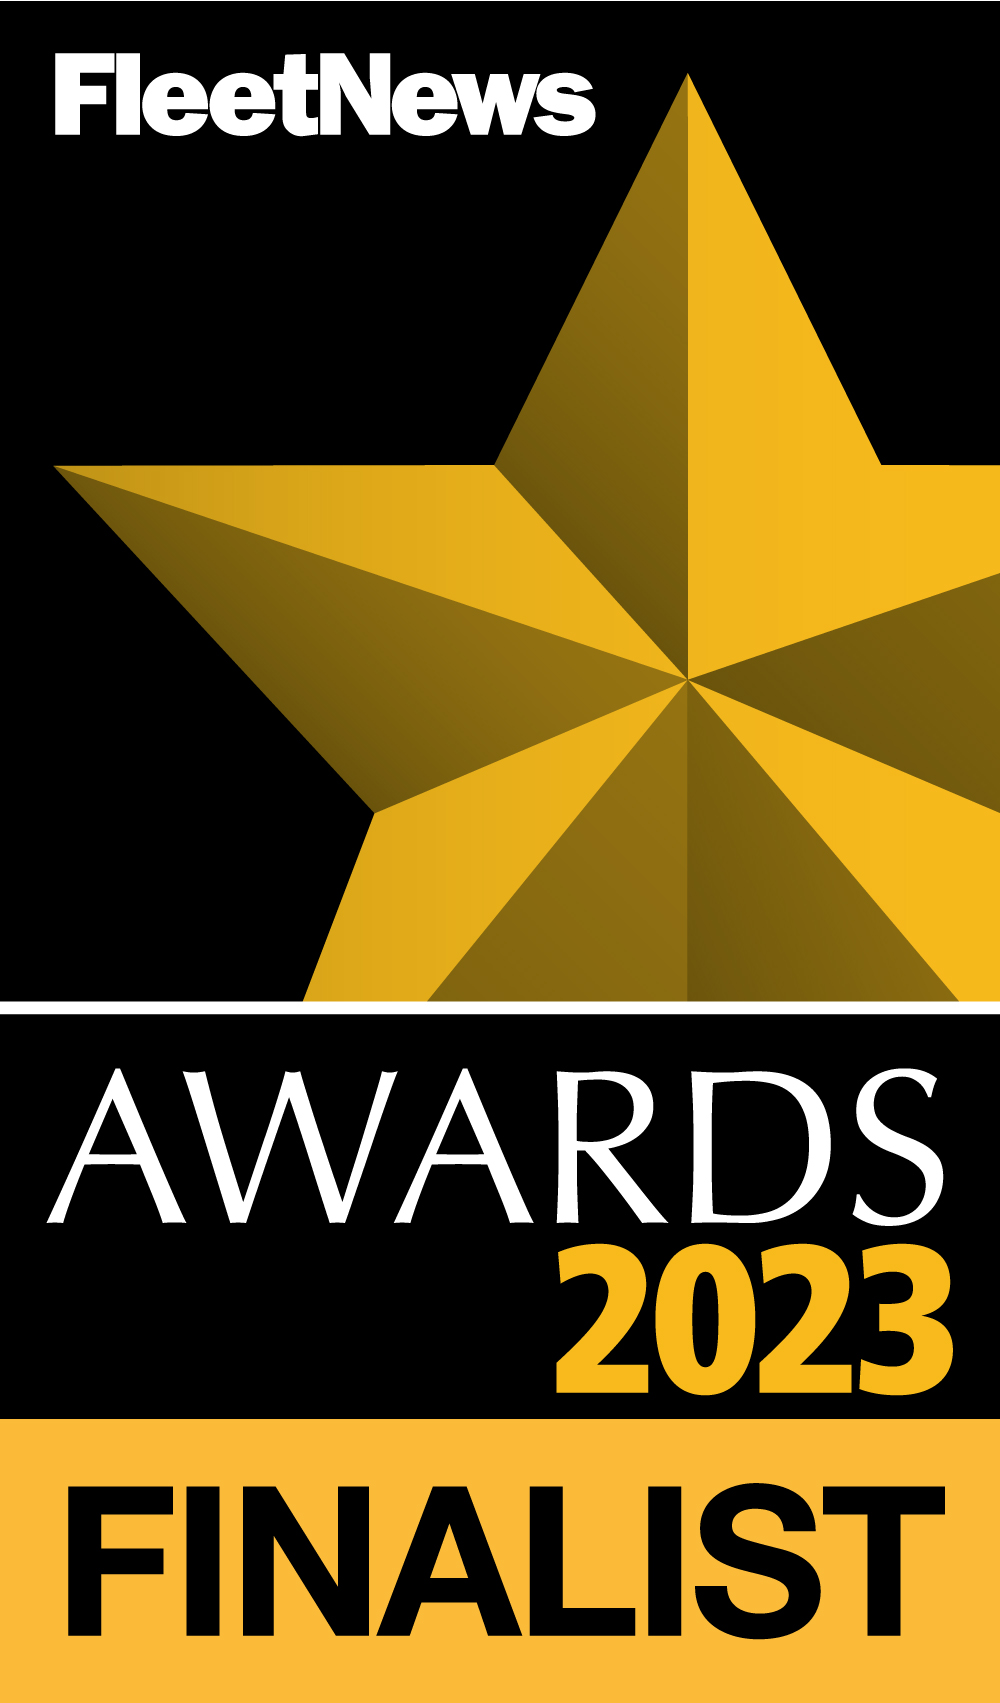 Fleet News Awards 2023 Finalist logo